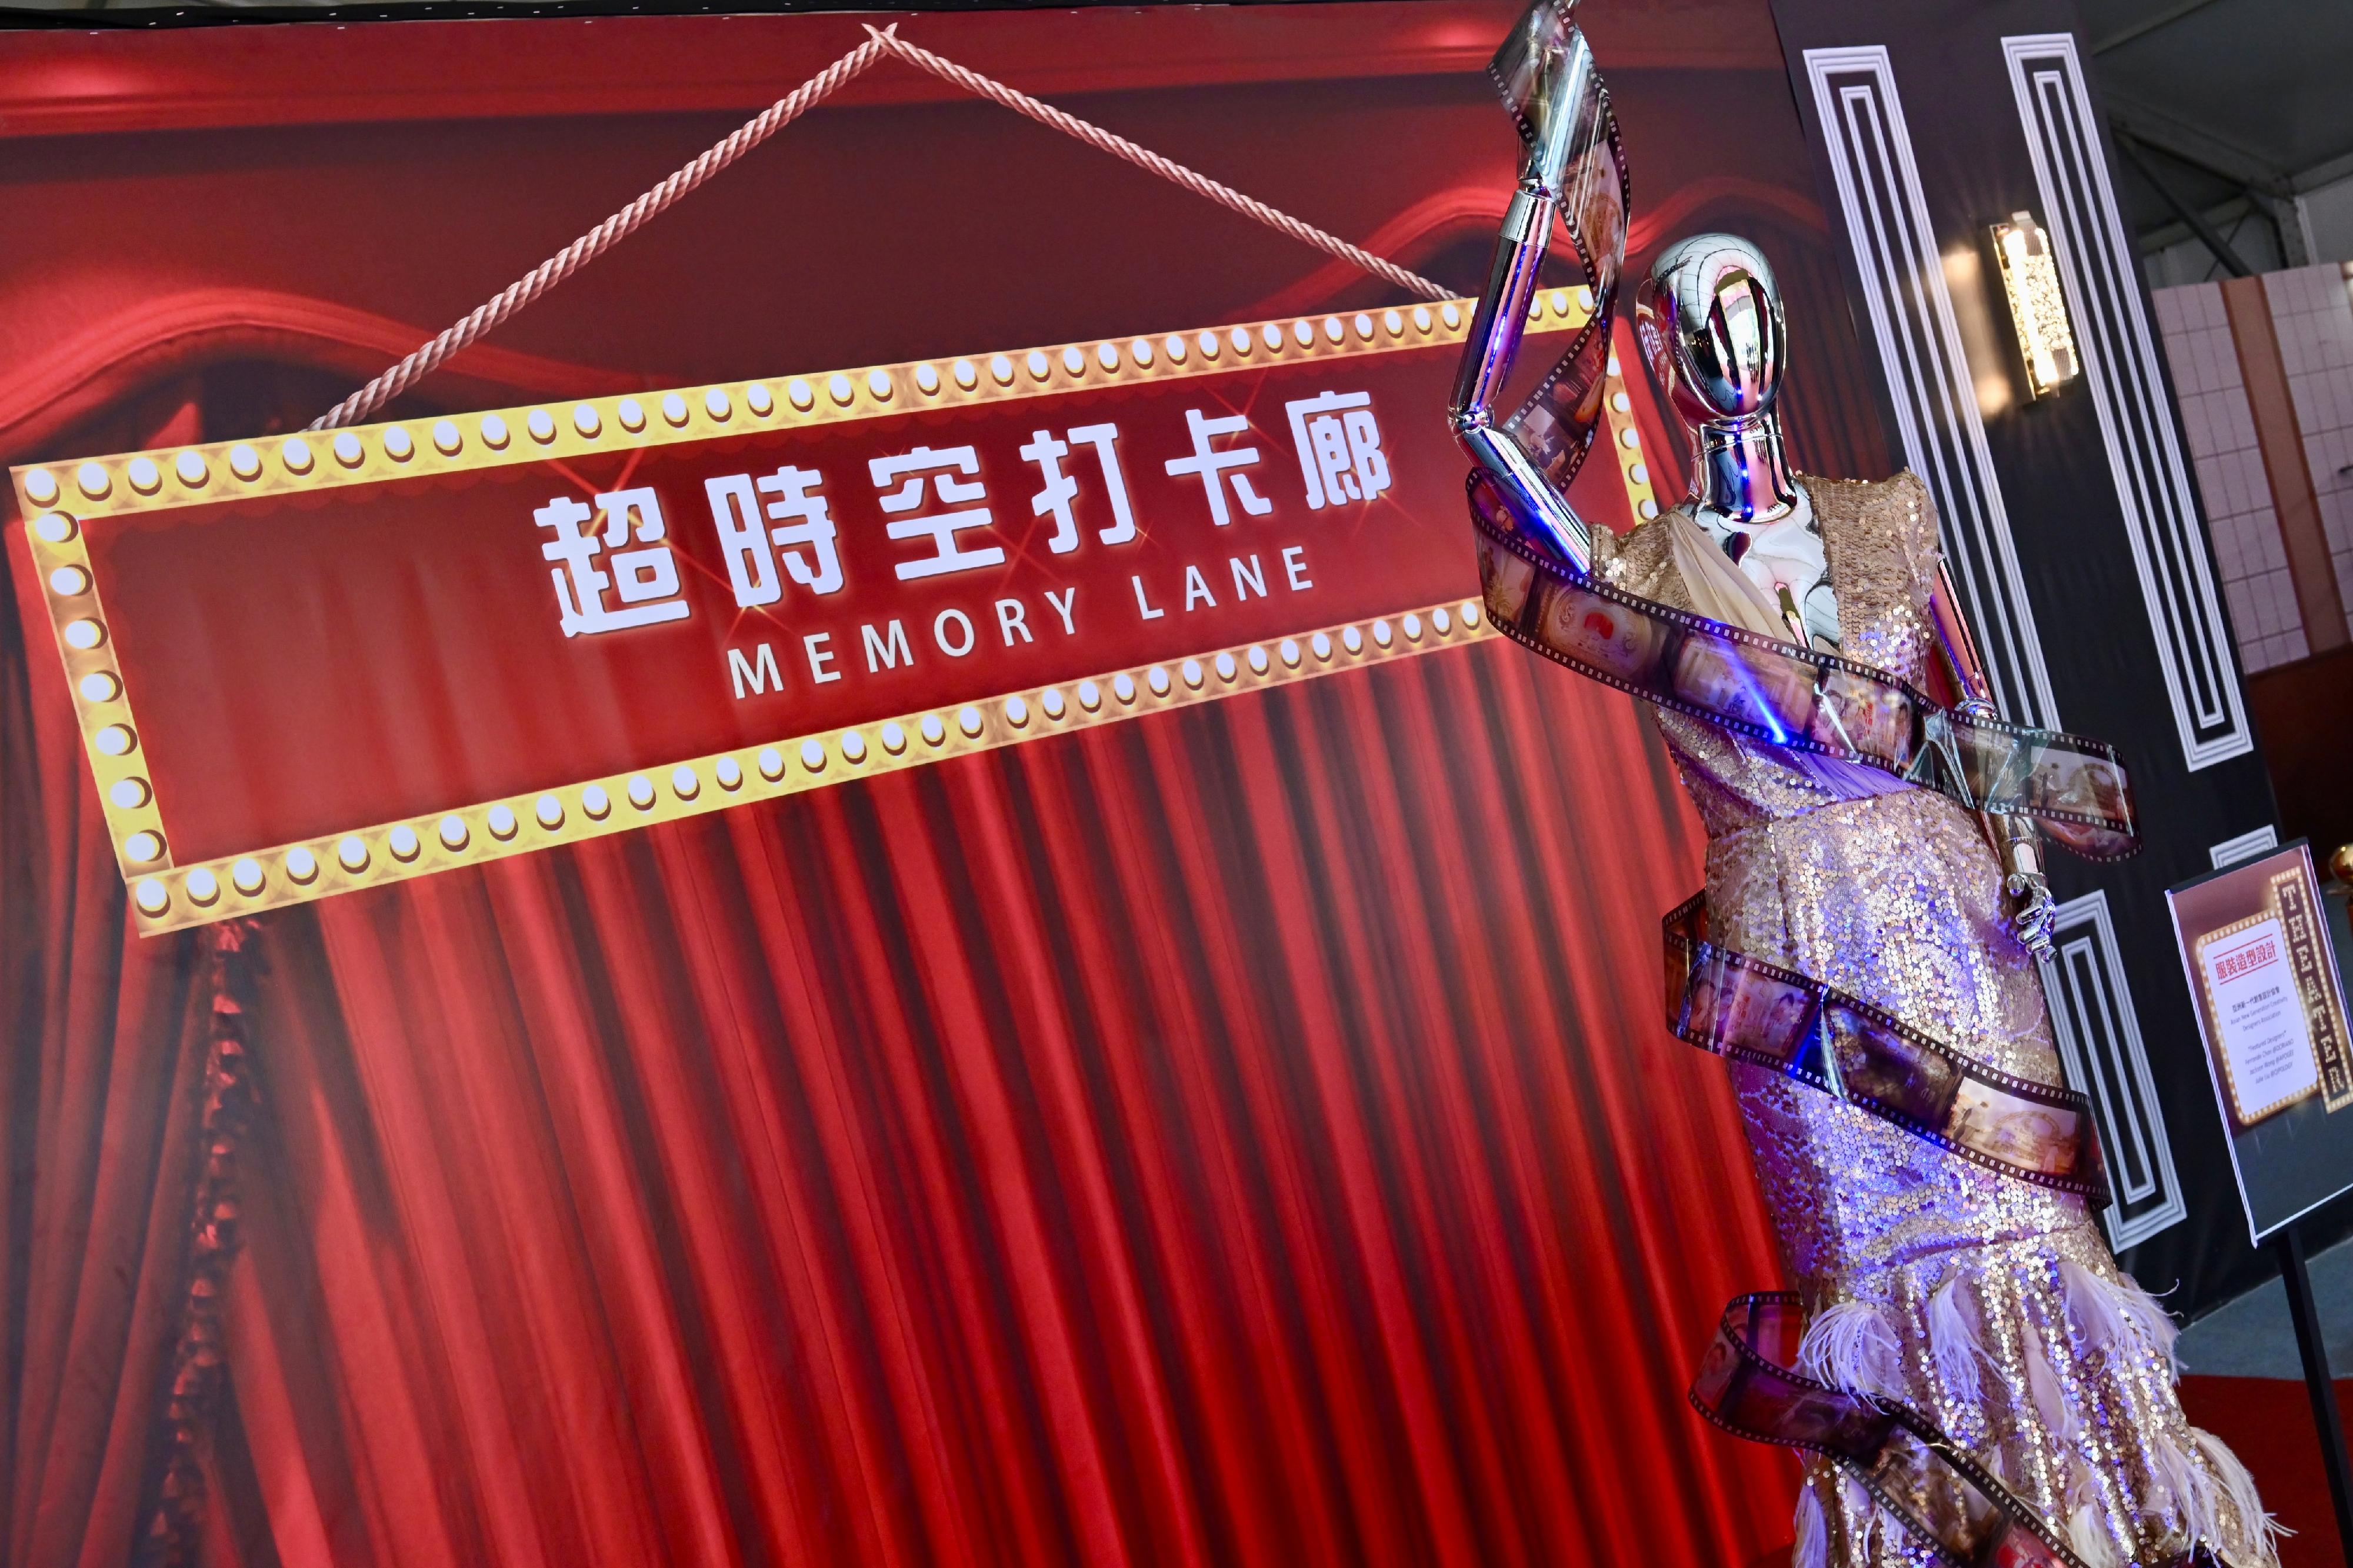 康樂及文化事務署主辦的第二屆「香港流行文化節」明日（四月六日）開幕。今年文化節的主題為「也文也武」，旨在帶領大家穿梭古今，縱橫文武，展示香港流行文化的多元魅力。圖示開幕節目「天空草地」其中一個環節「超時空打卡廊」，讓市民重遊著名港產片的難忘場景。
